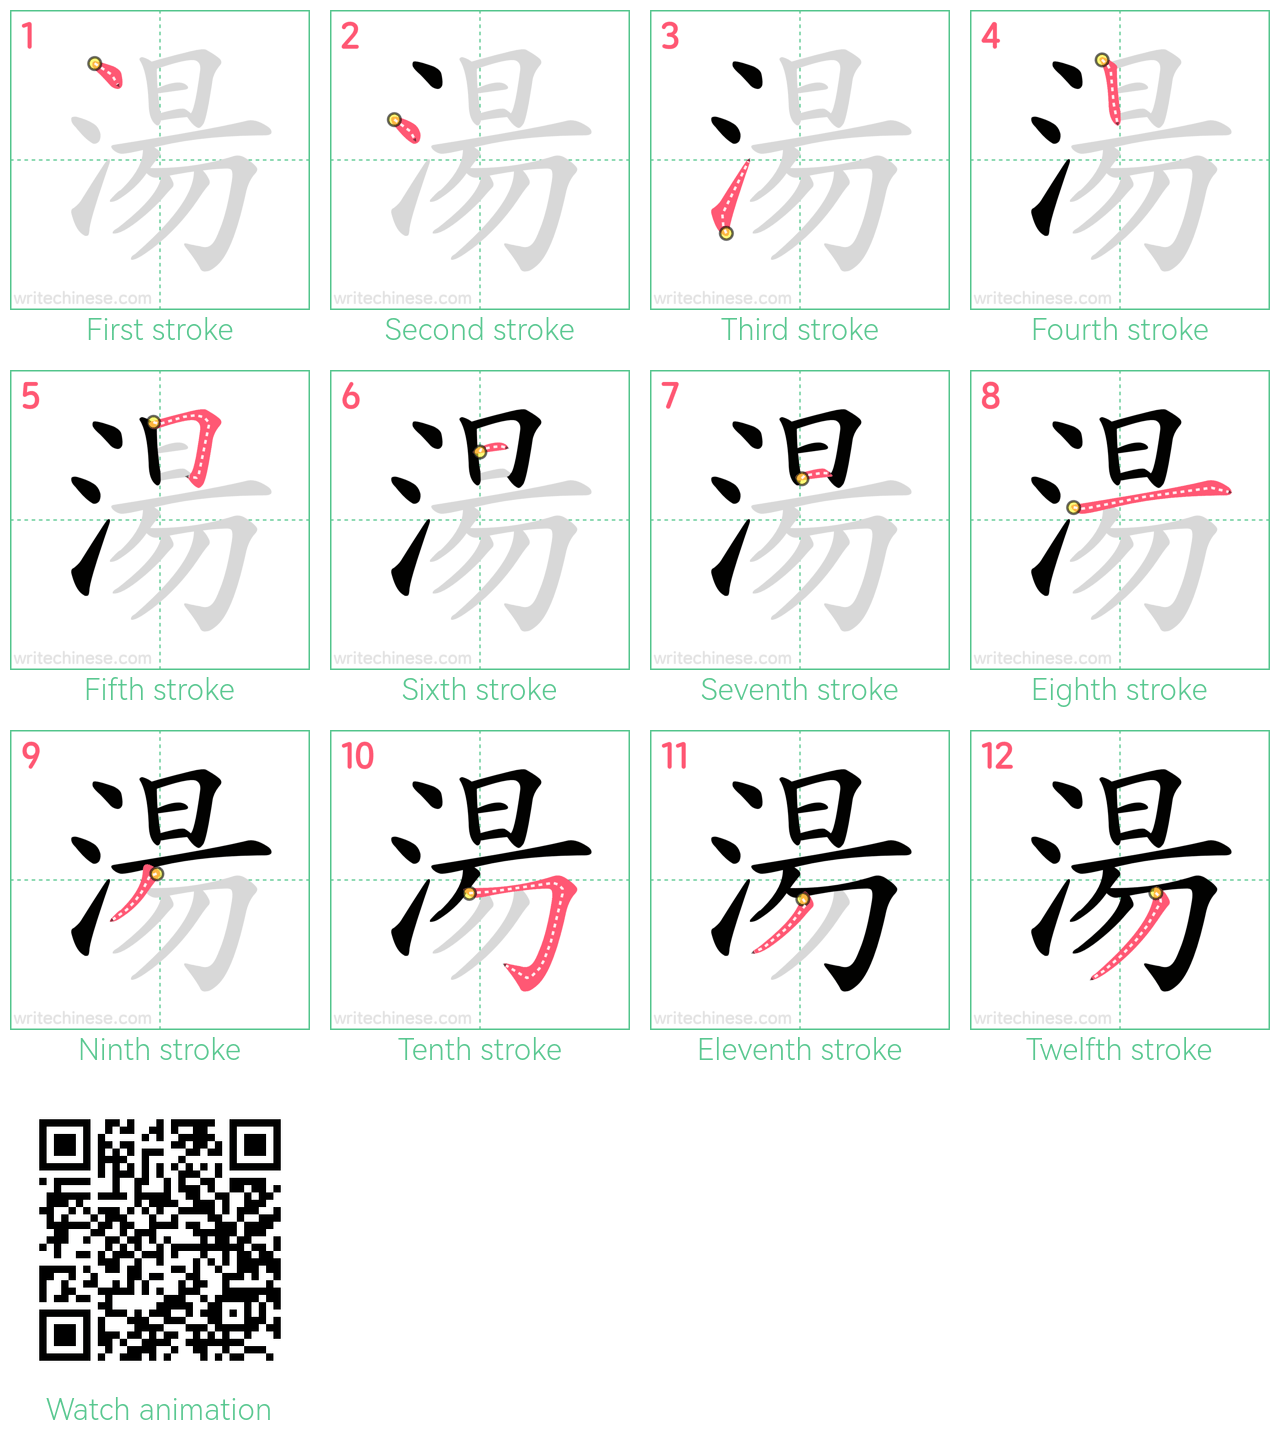 湯 step-by-step stroke order diagrams